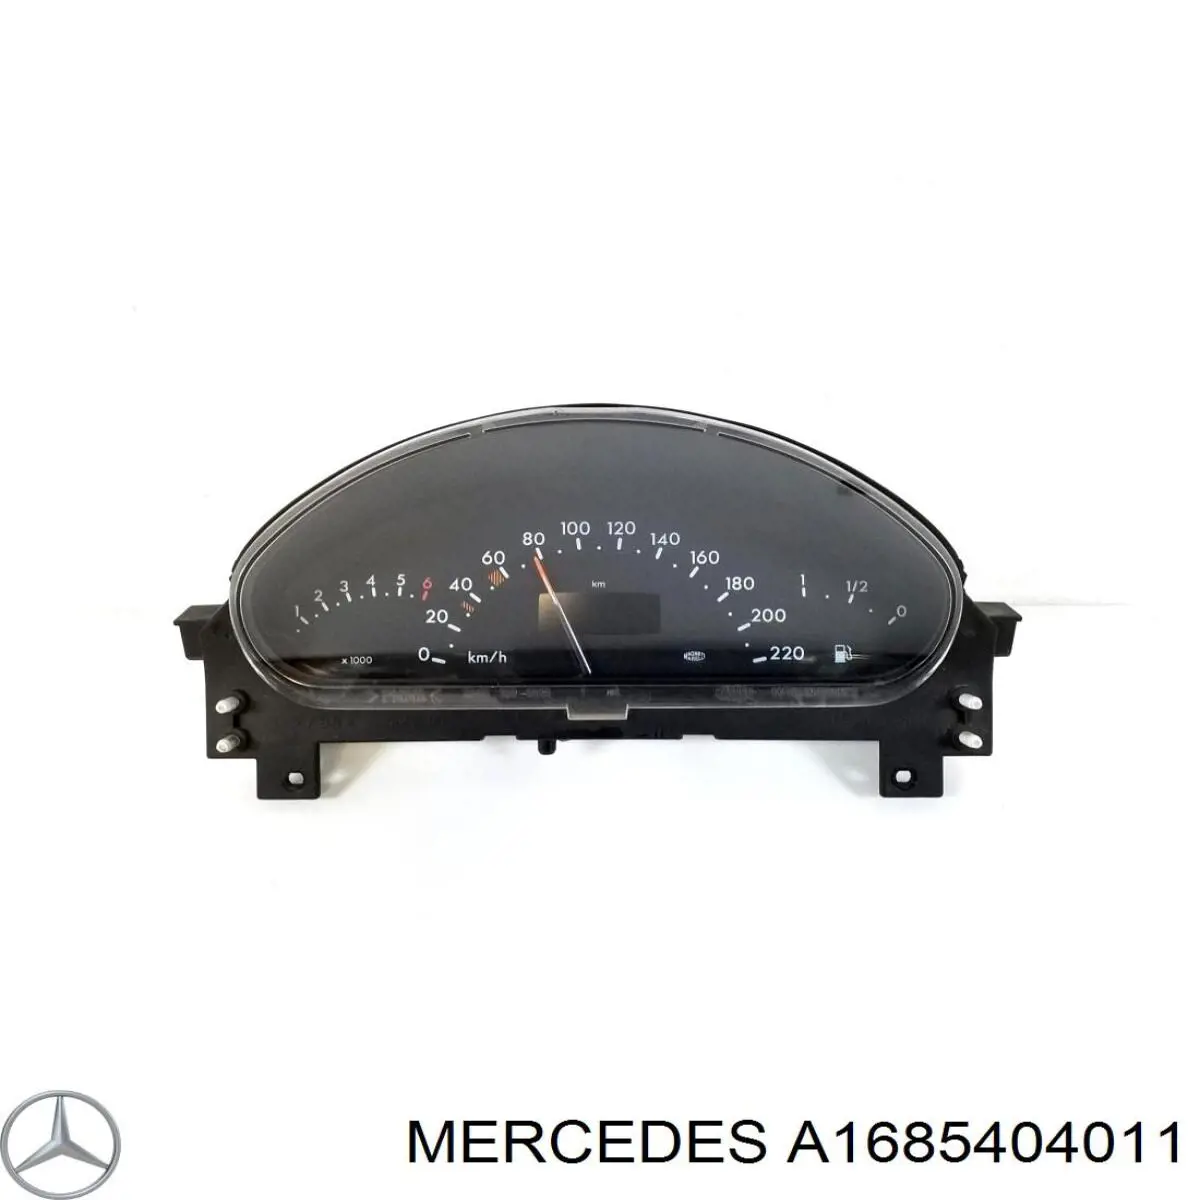 A1685404011 Mercedes painel de instrumentos (quadro de instrumentos)